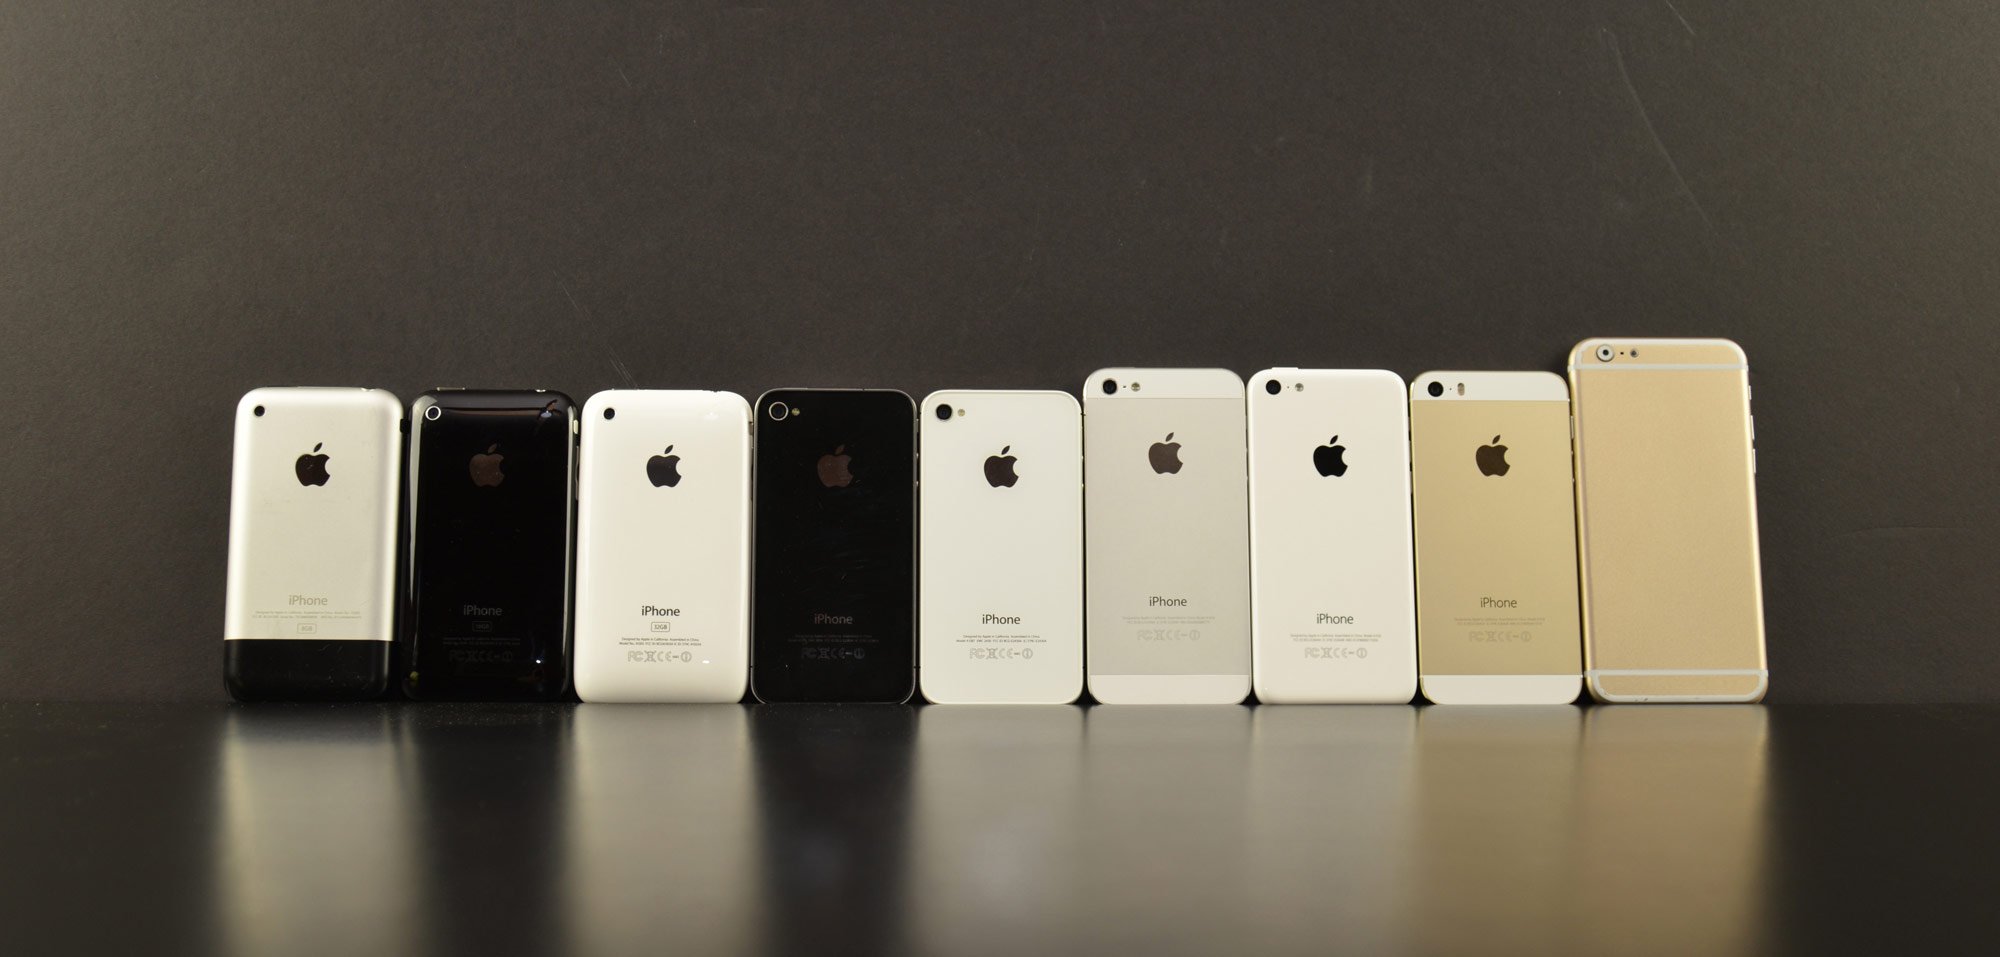 Hochauflösende Fotos: iPhone 6 im Vergleich mit Samsung Galaxy S5 und HTC One M8 1